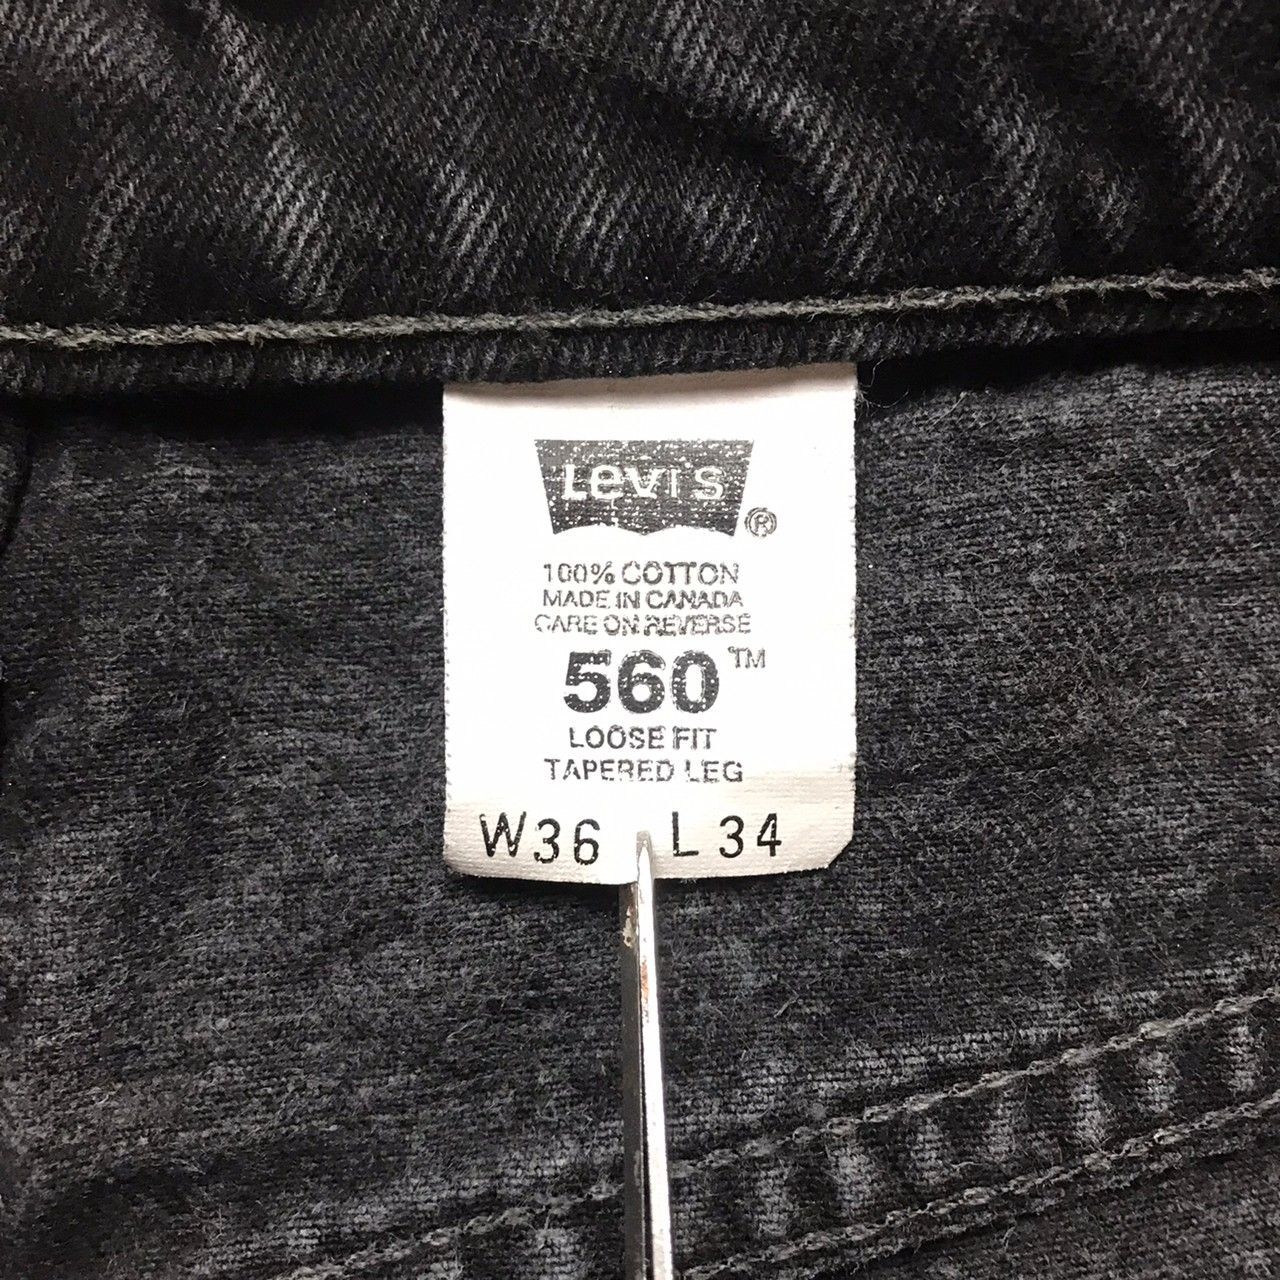 604 【Levi's 560 BLACK】W36 L34 CANADA製 ブラック ワイド バギー